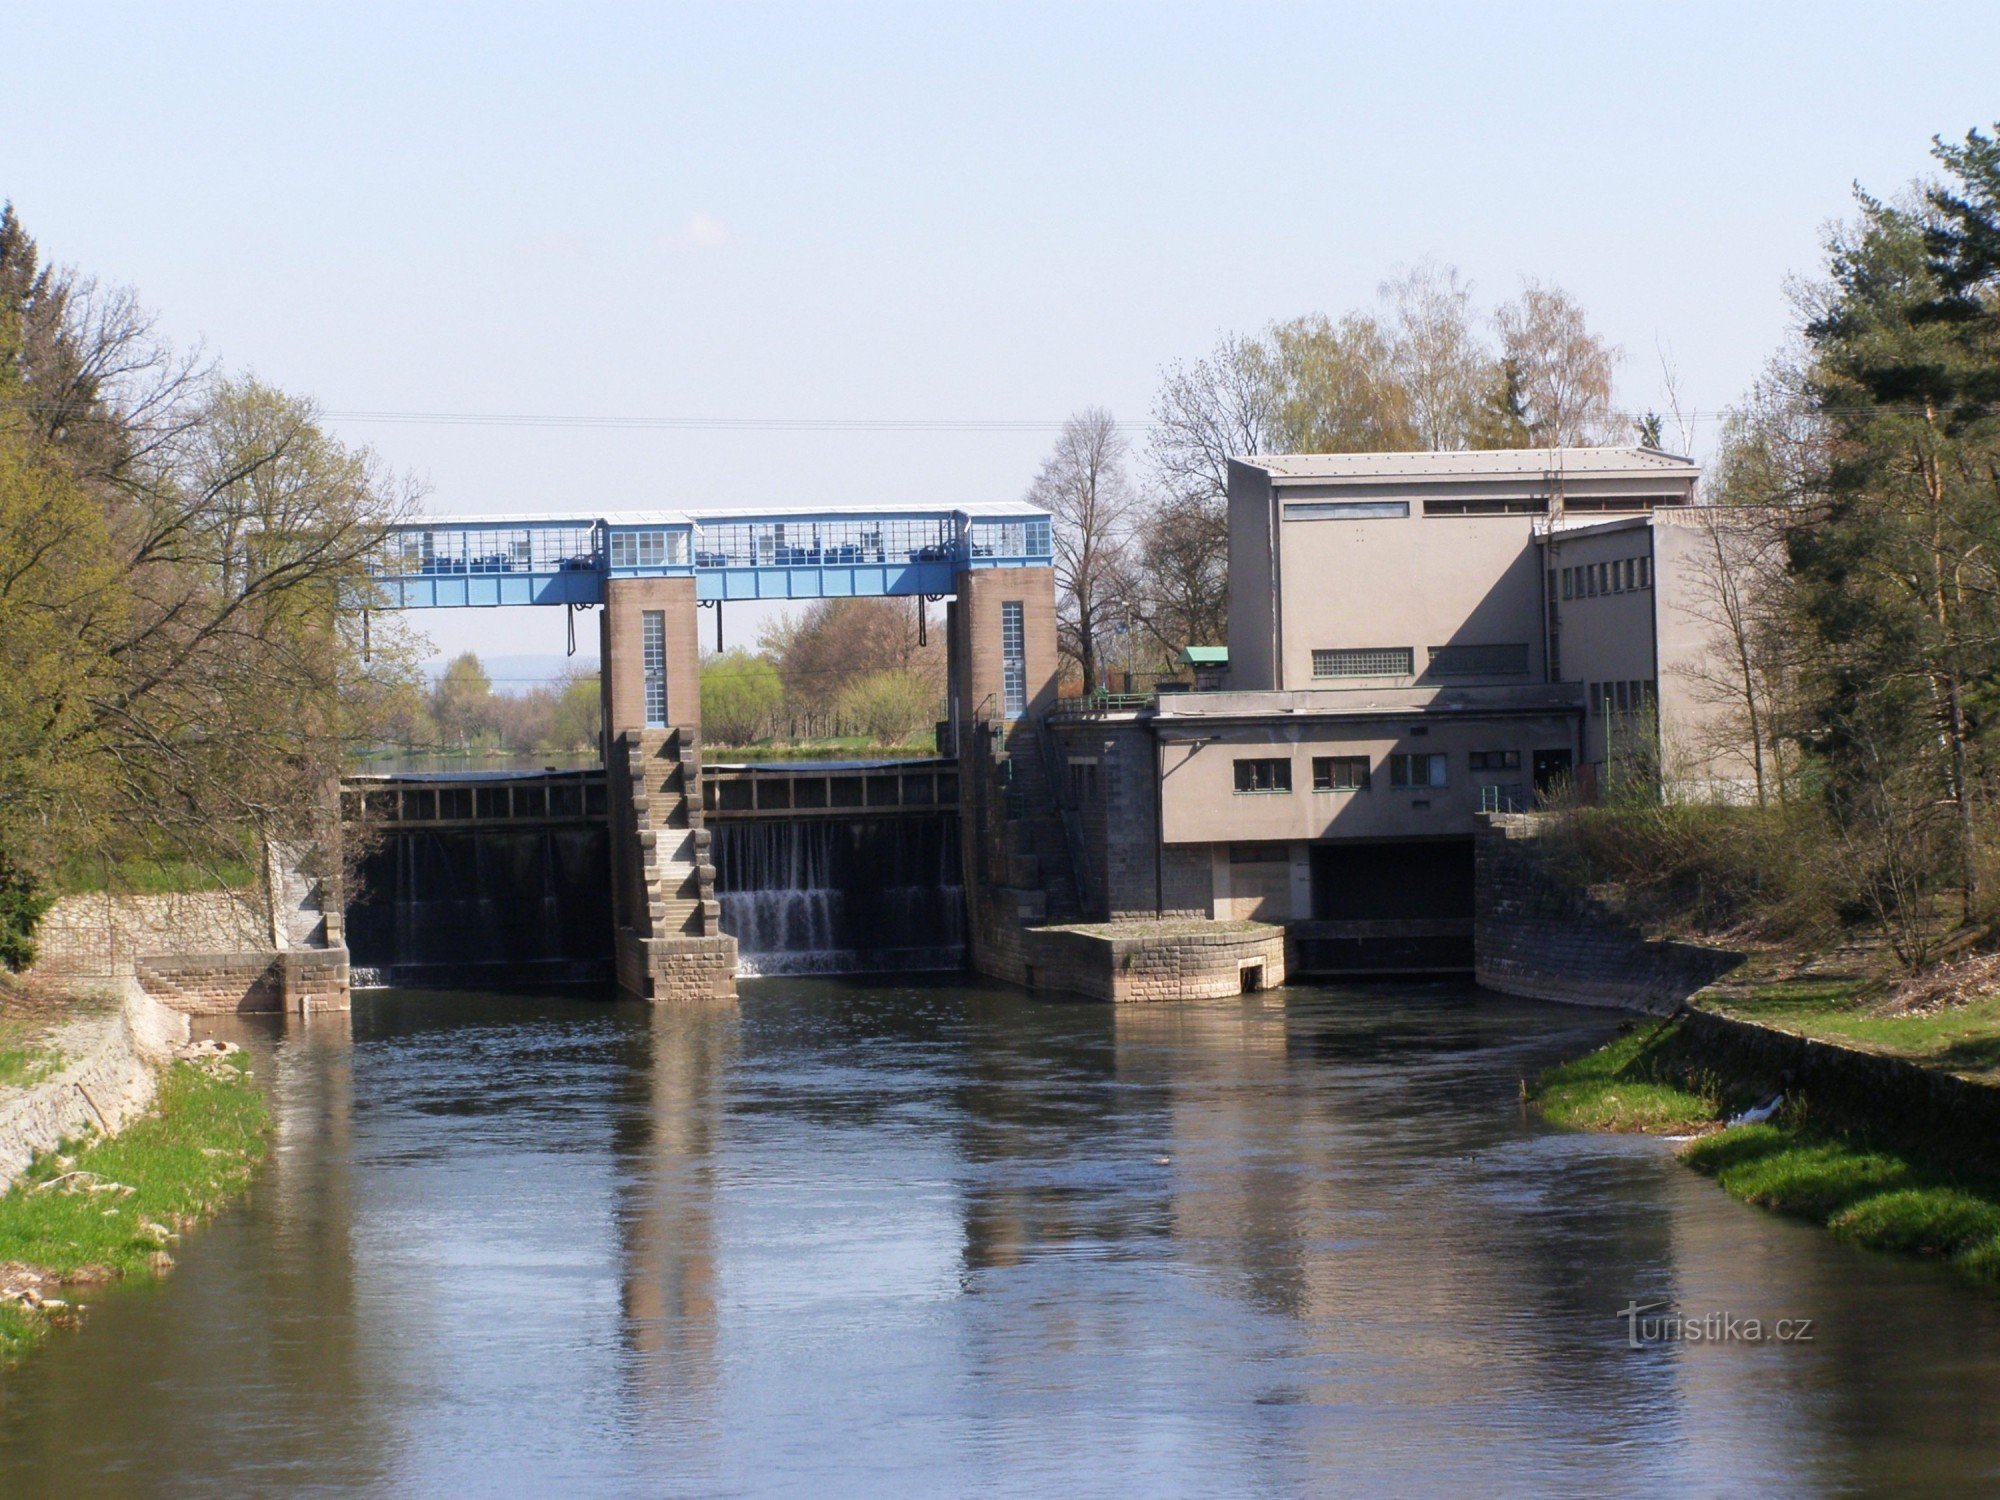 Đập Smiřický - nhà máy thủy điện trên sông Elbe